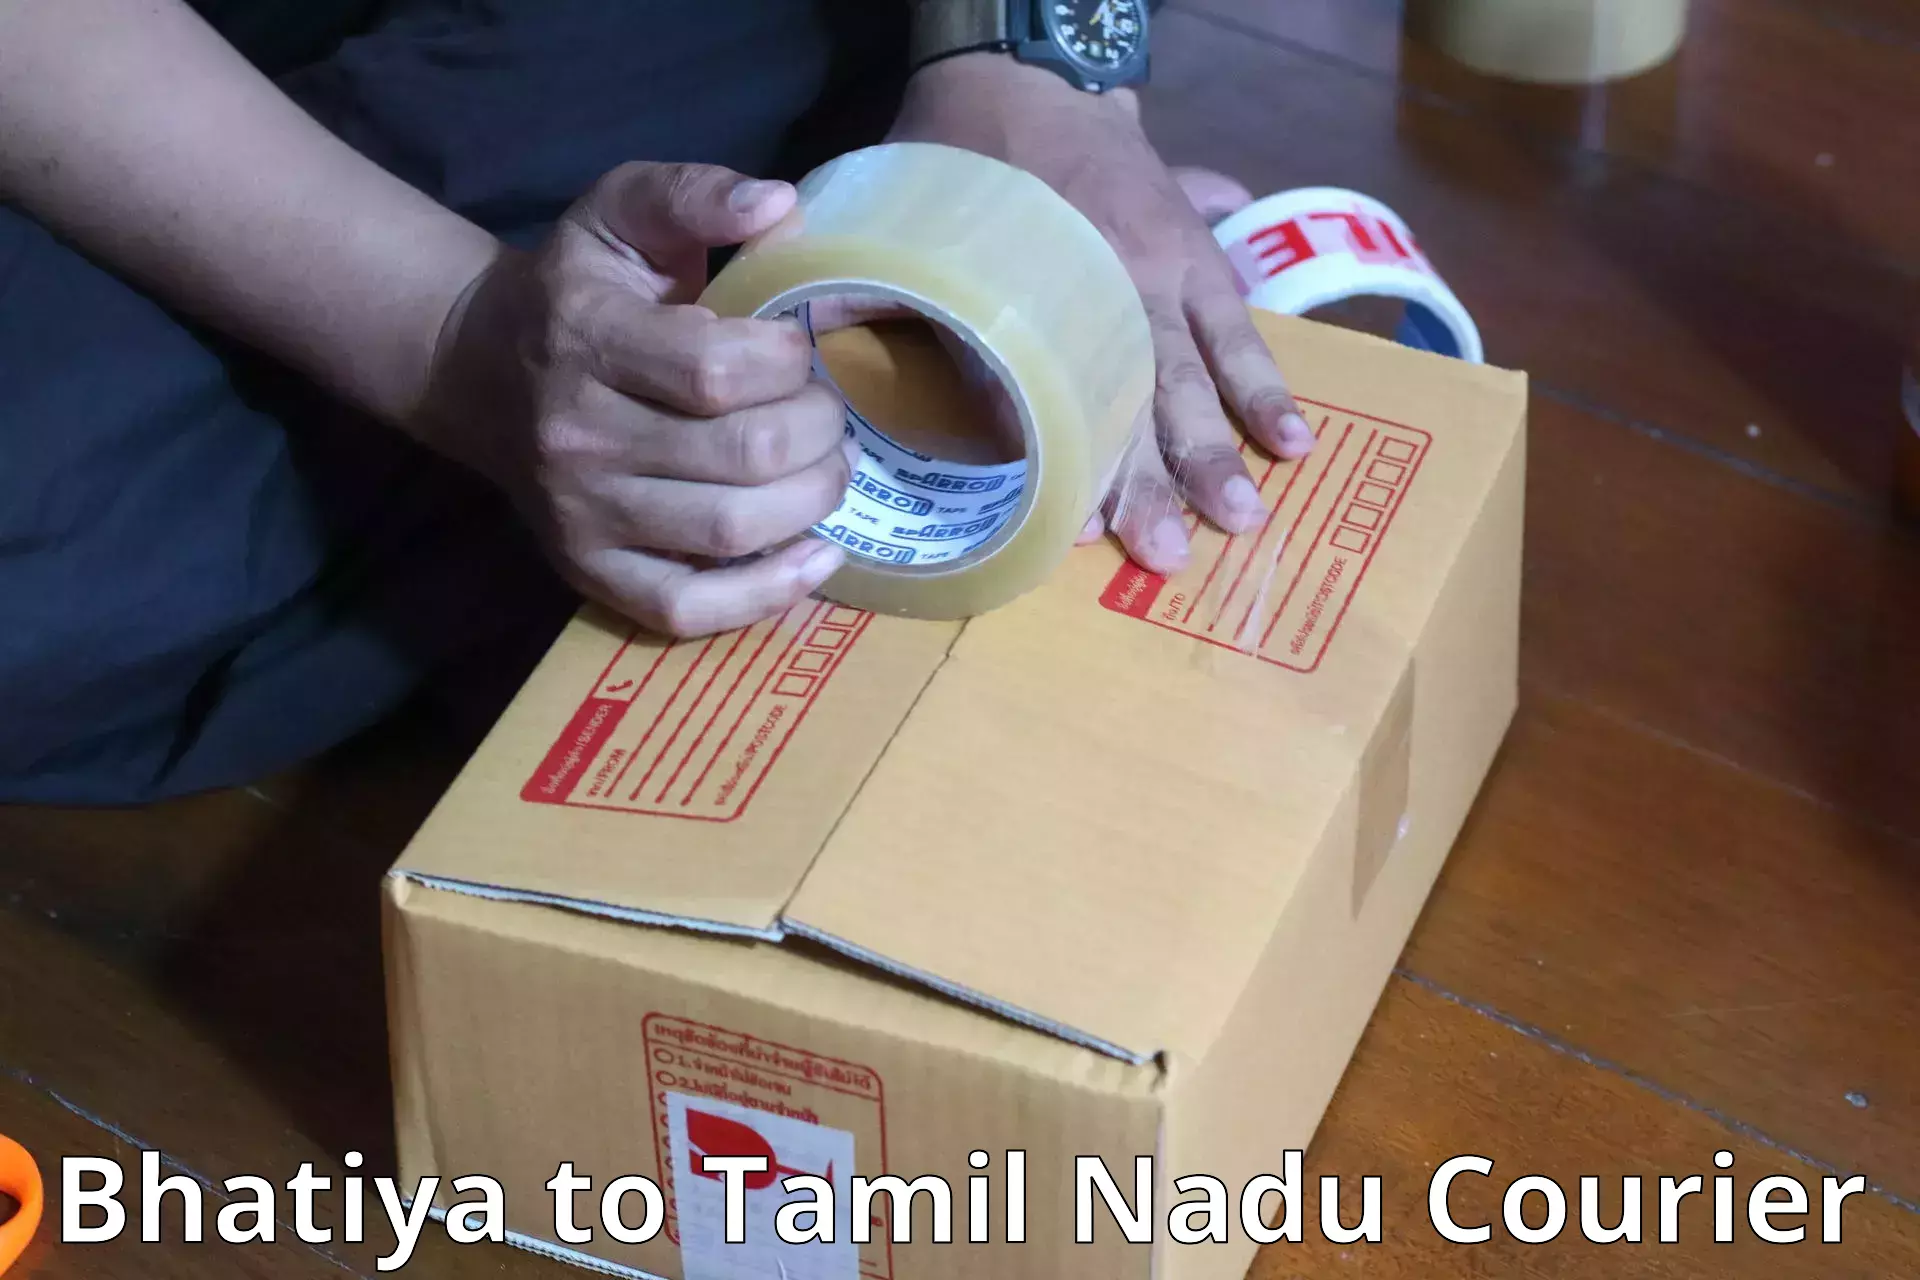 Luggage delivery network Bhatiya to Tamil Nadu